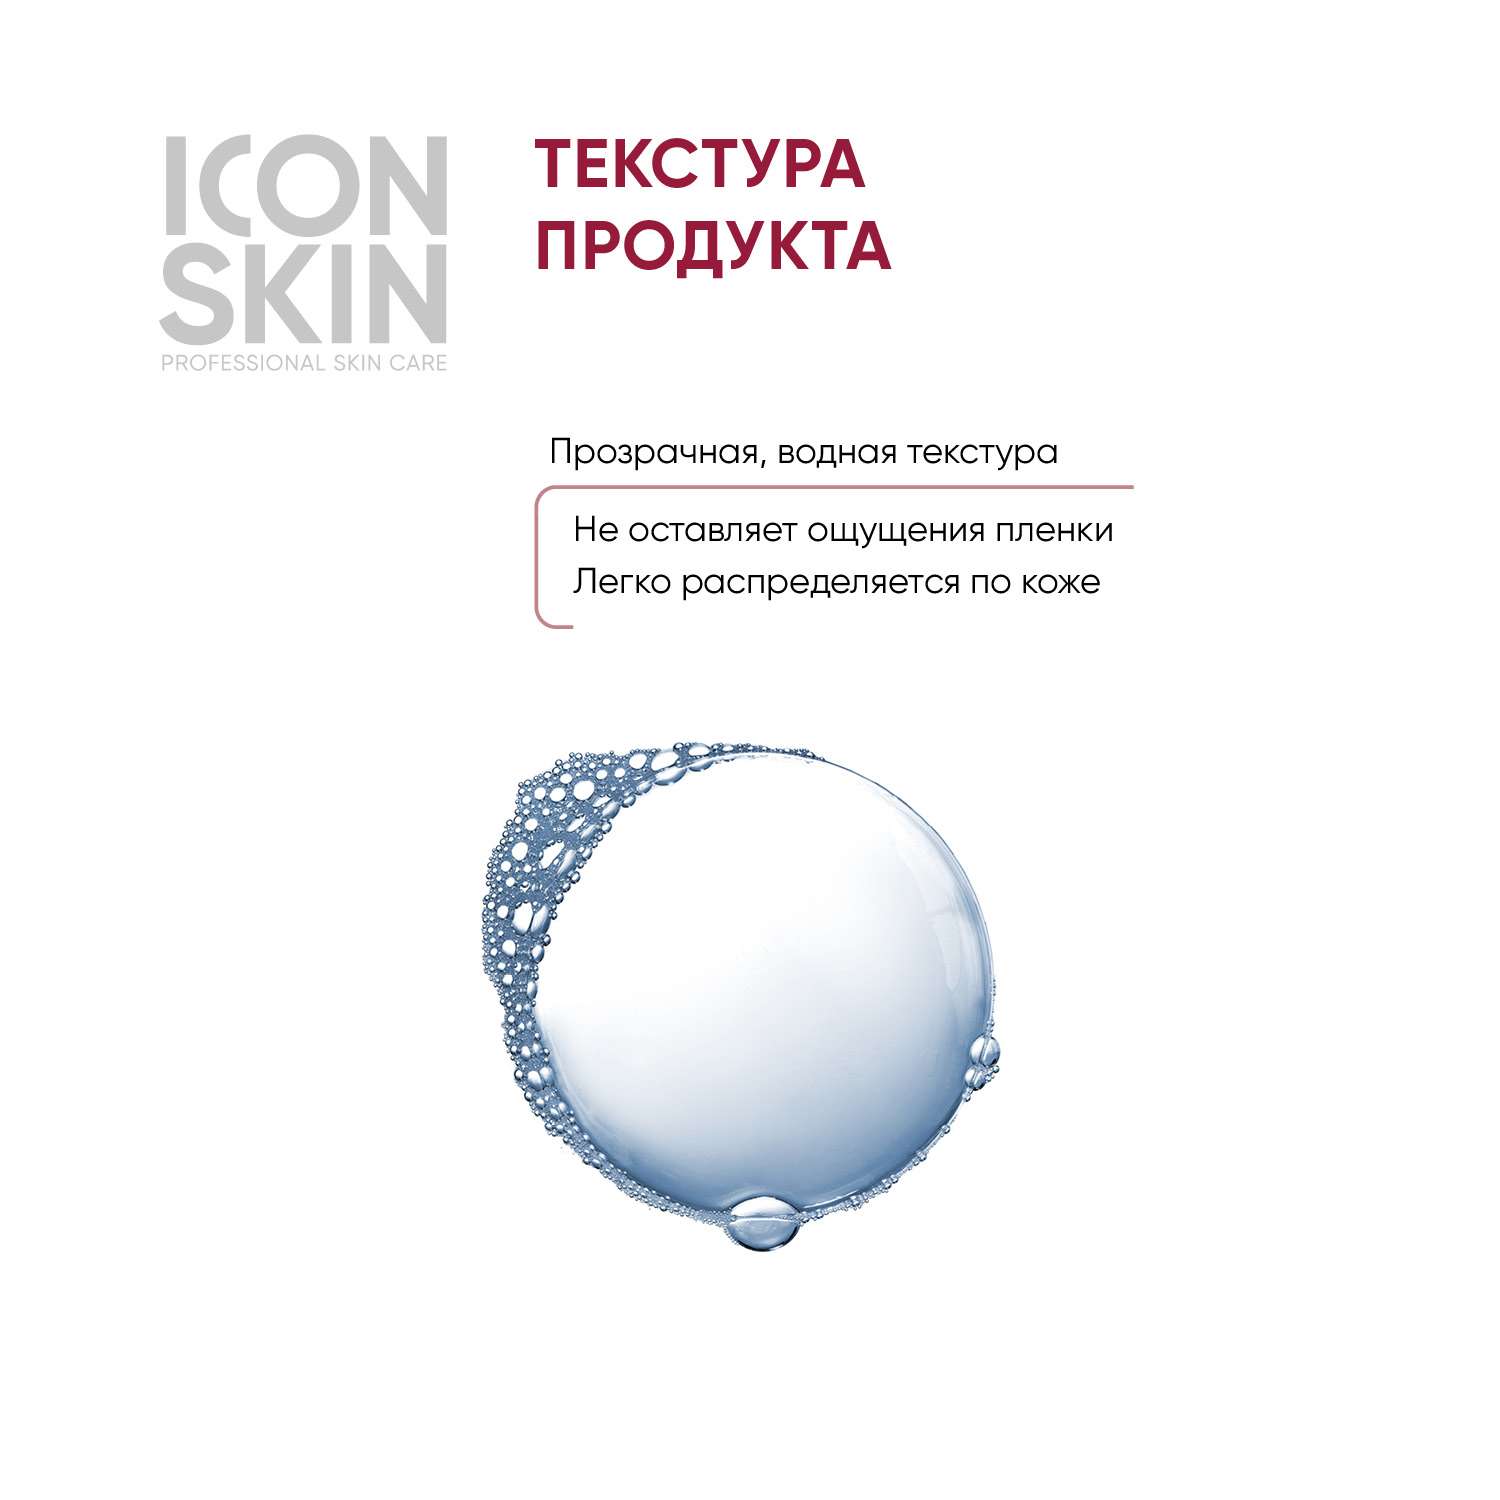 Тоник ICON SKIN лимфодренажный skin gym 150 мл - фото 4